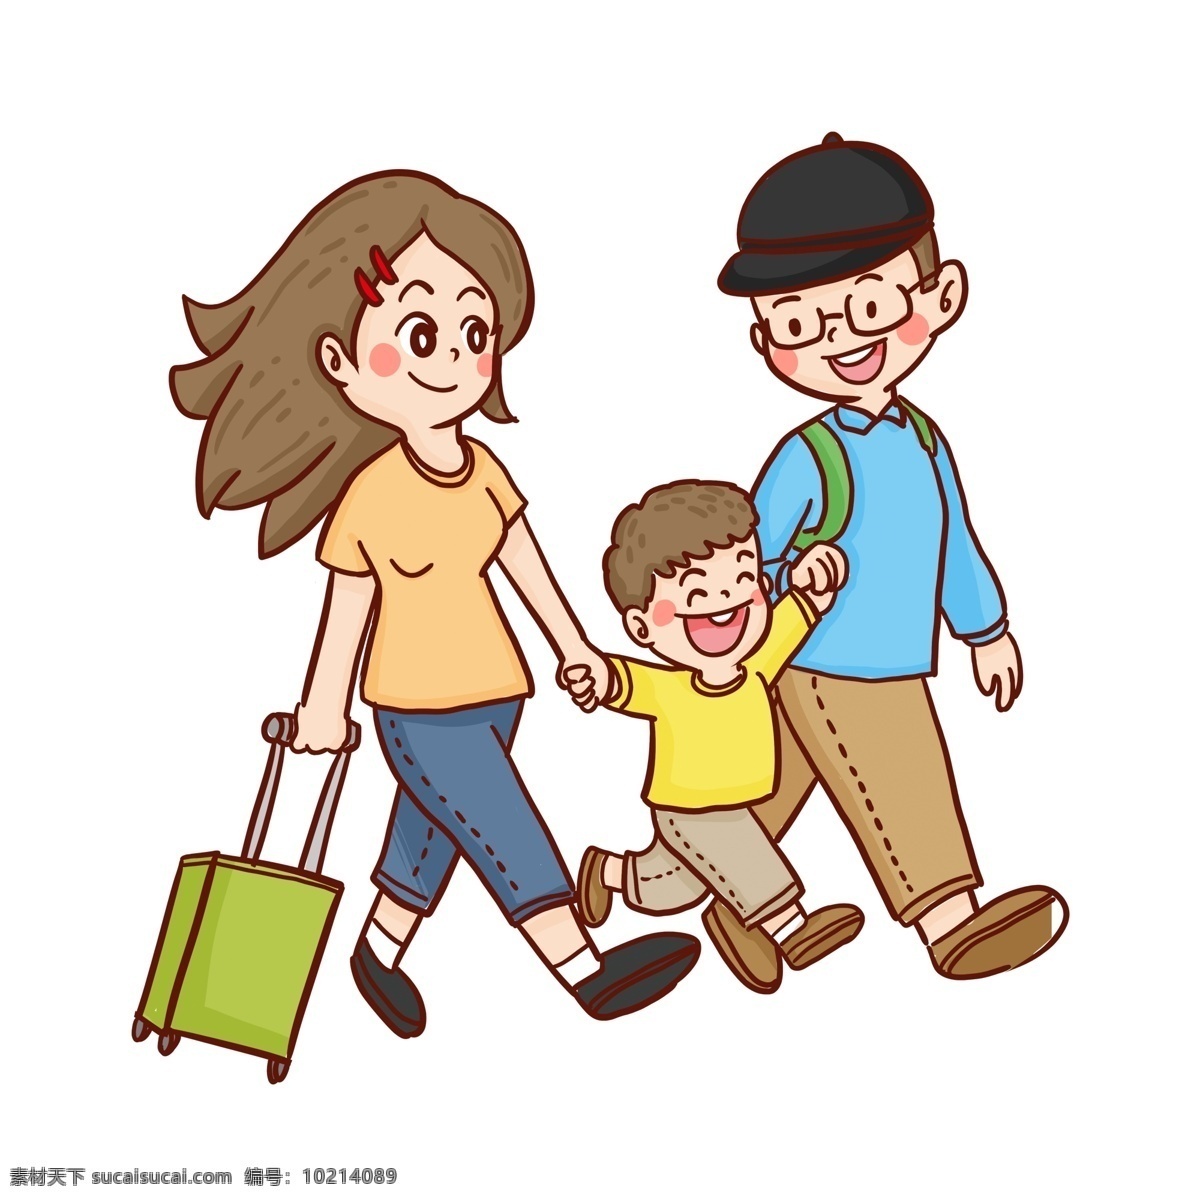 彩绘 春季 旅行 一家 三口 卡通 踏青 一家三口 人物设计 插画设计 行李箱 小男孩 母亲 爸爸